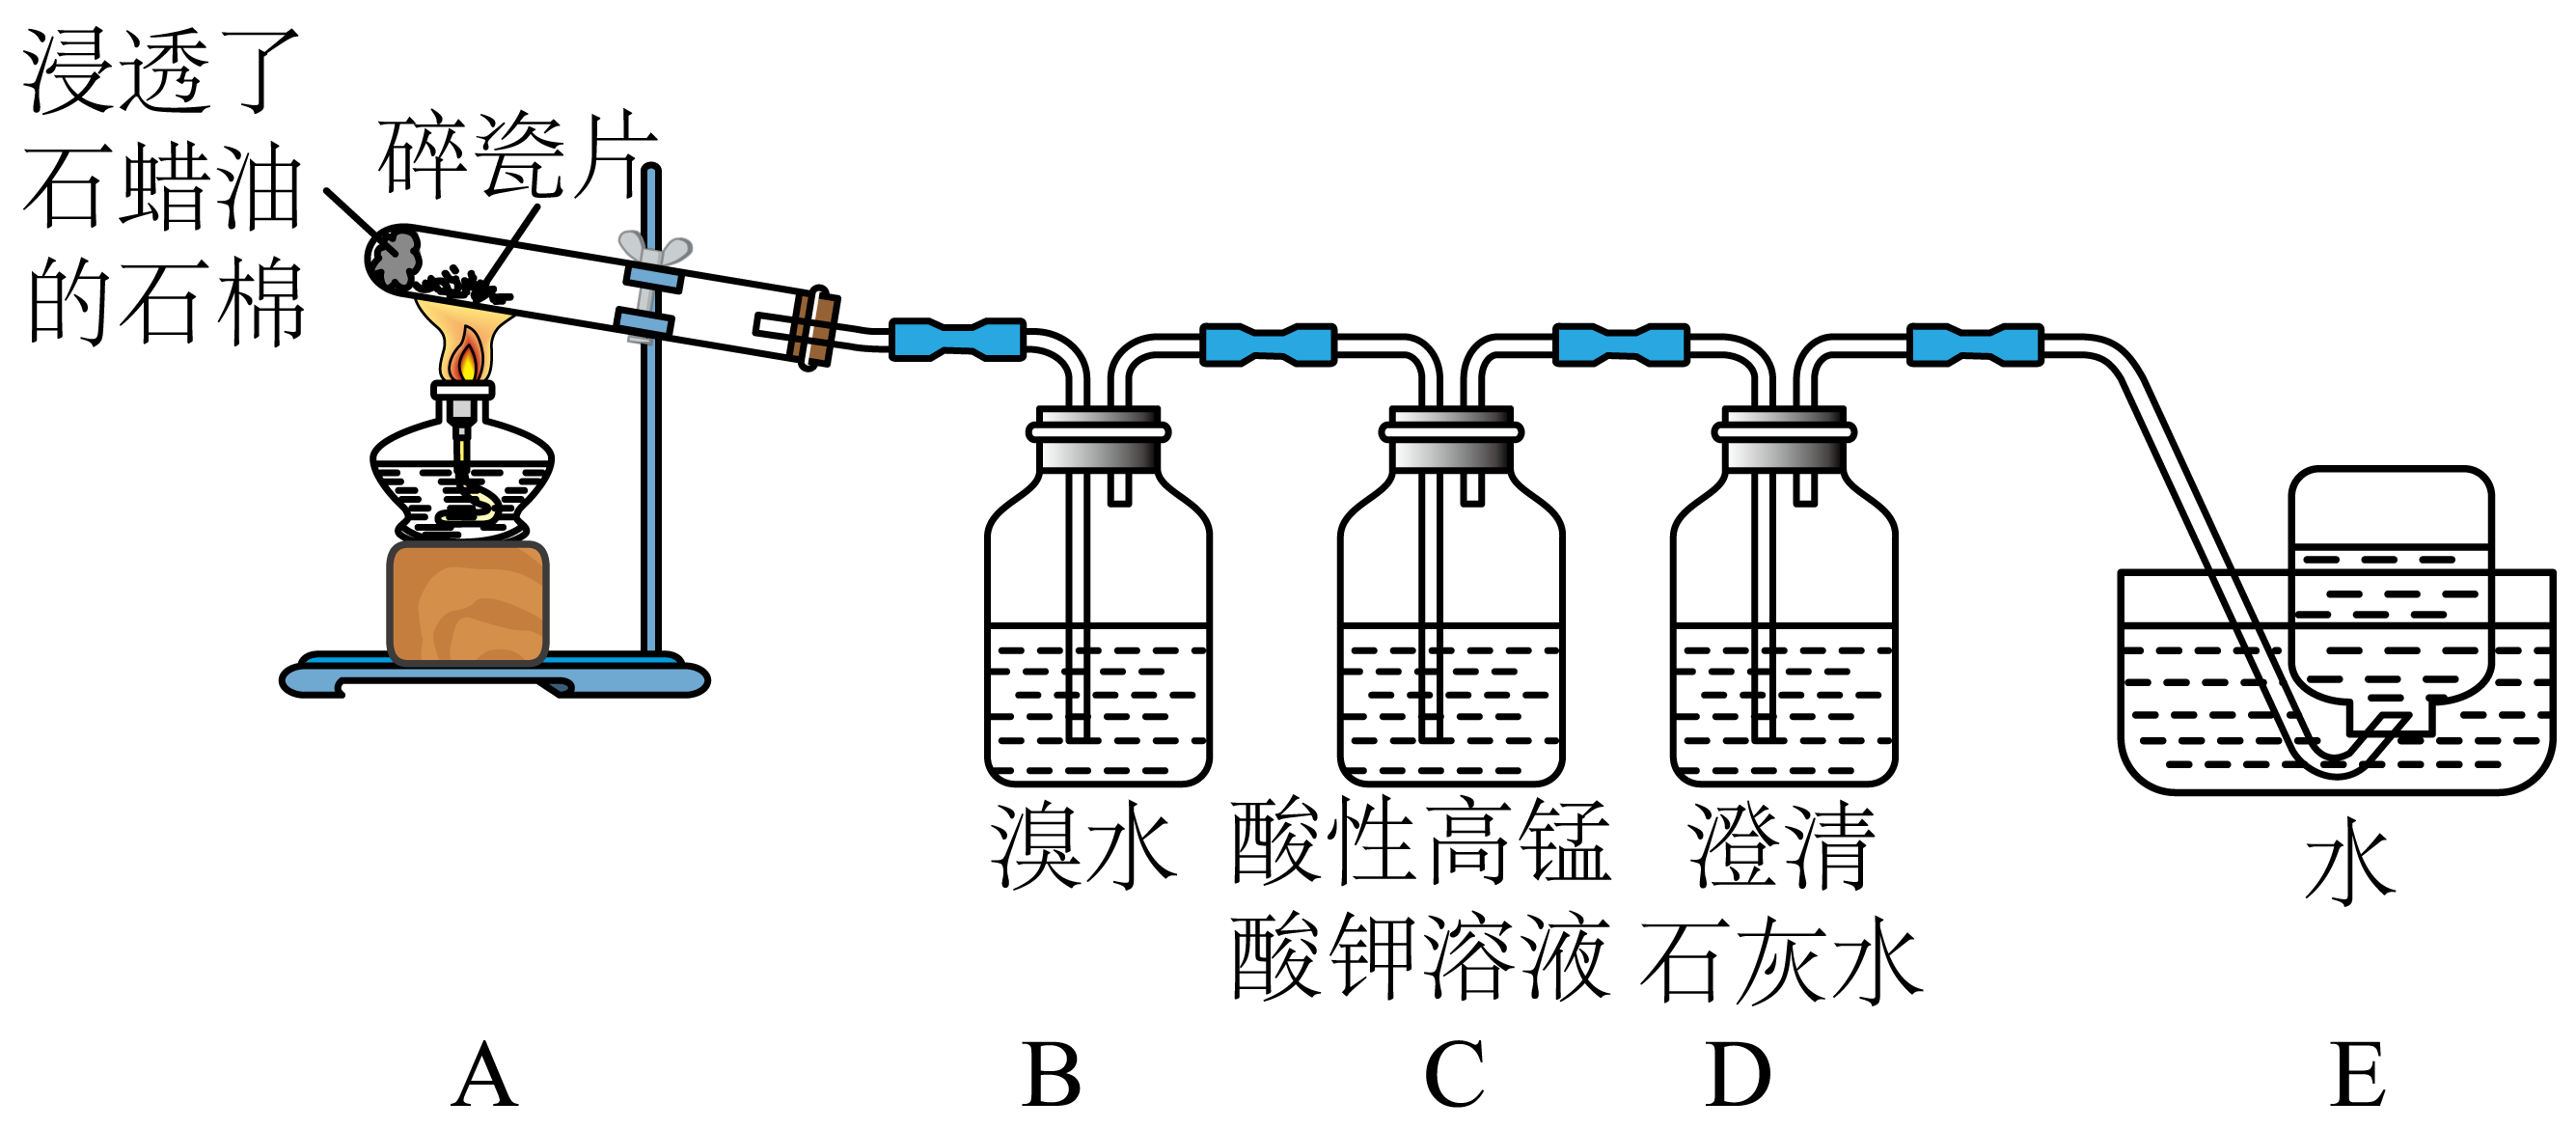 制备乙烯的原理和乙烯的主要化学性质,实验装置如图所示(已知a装置可